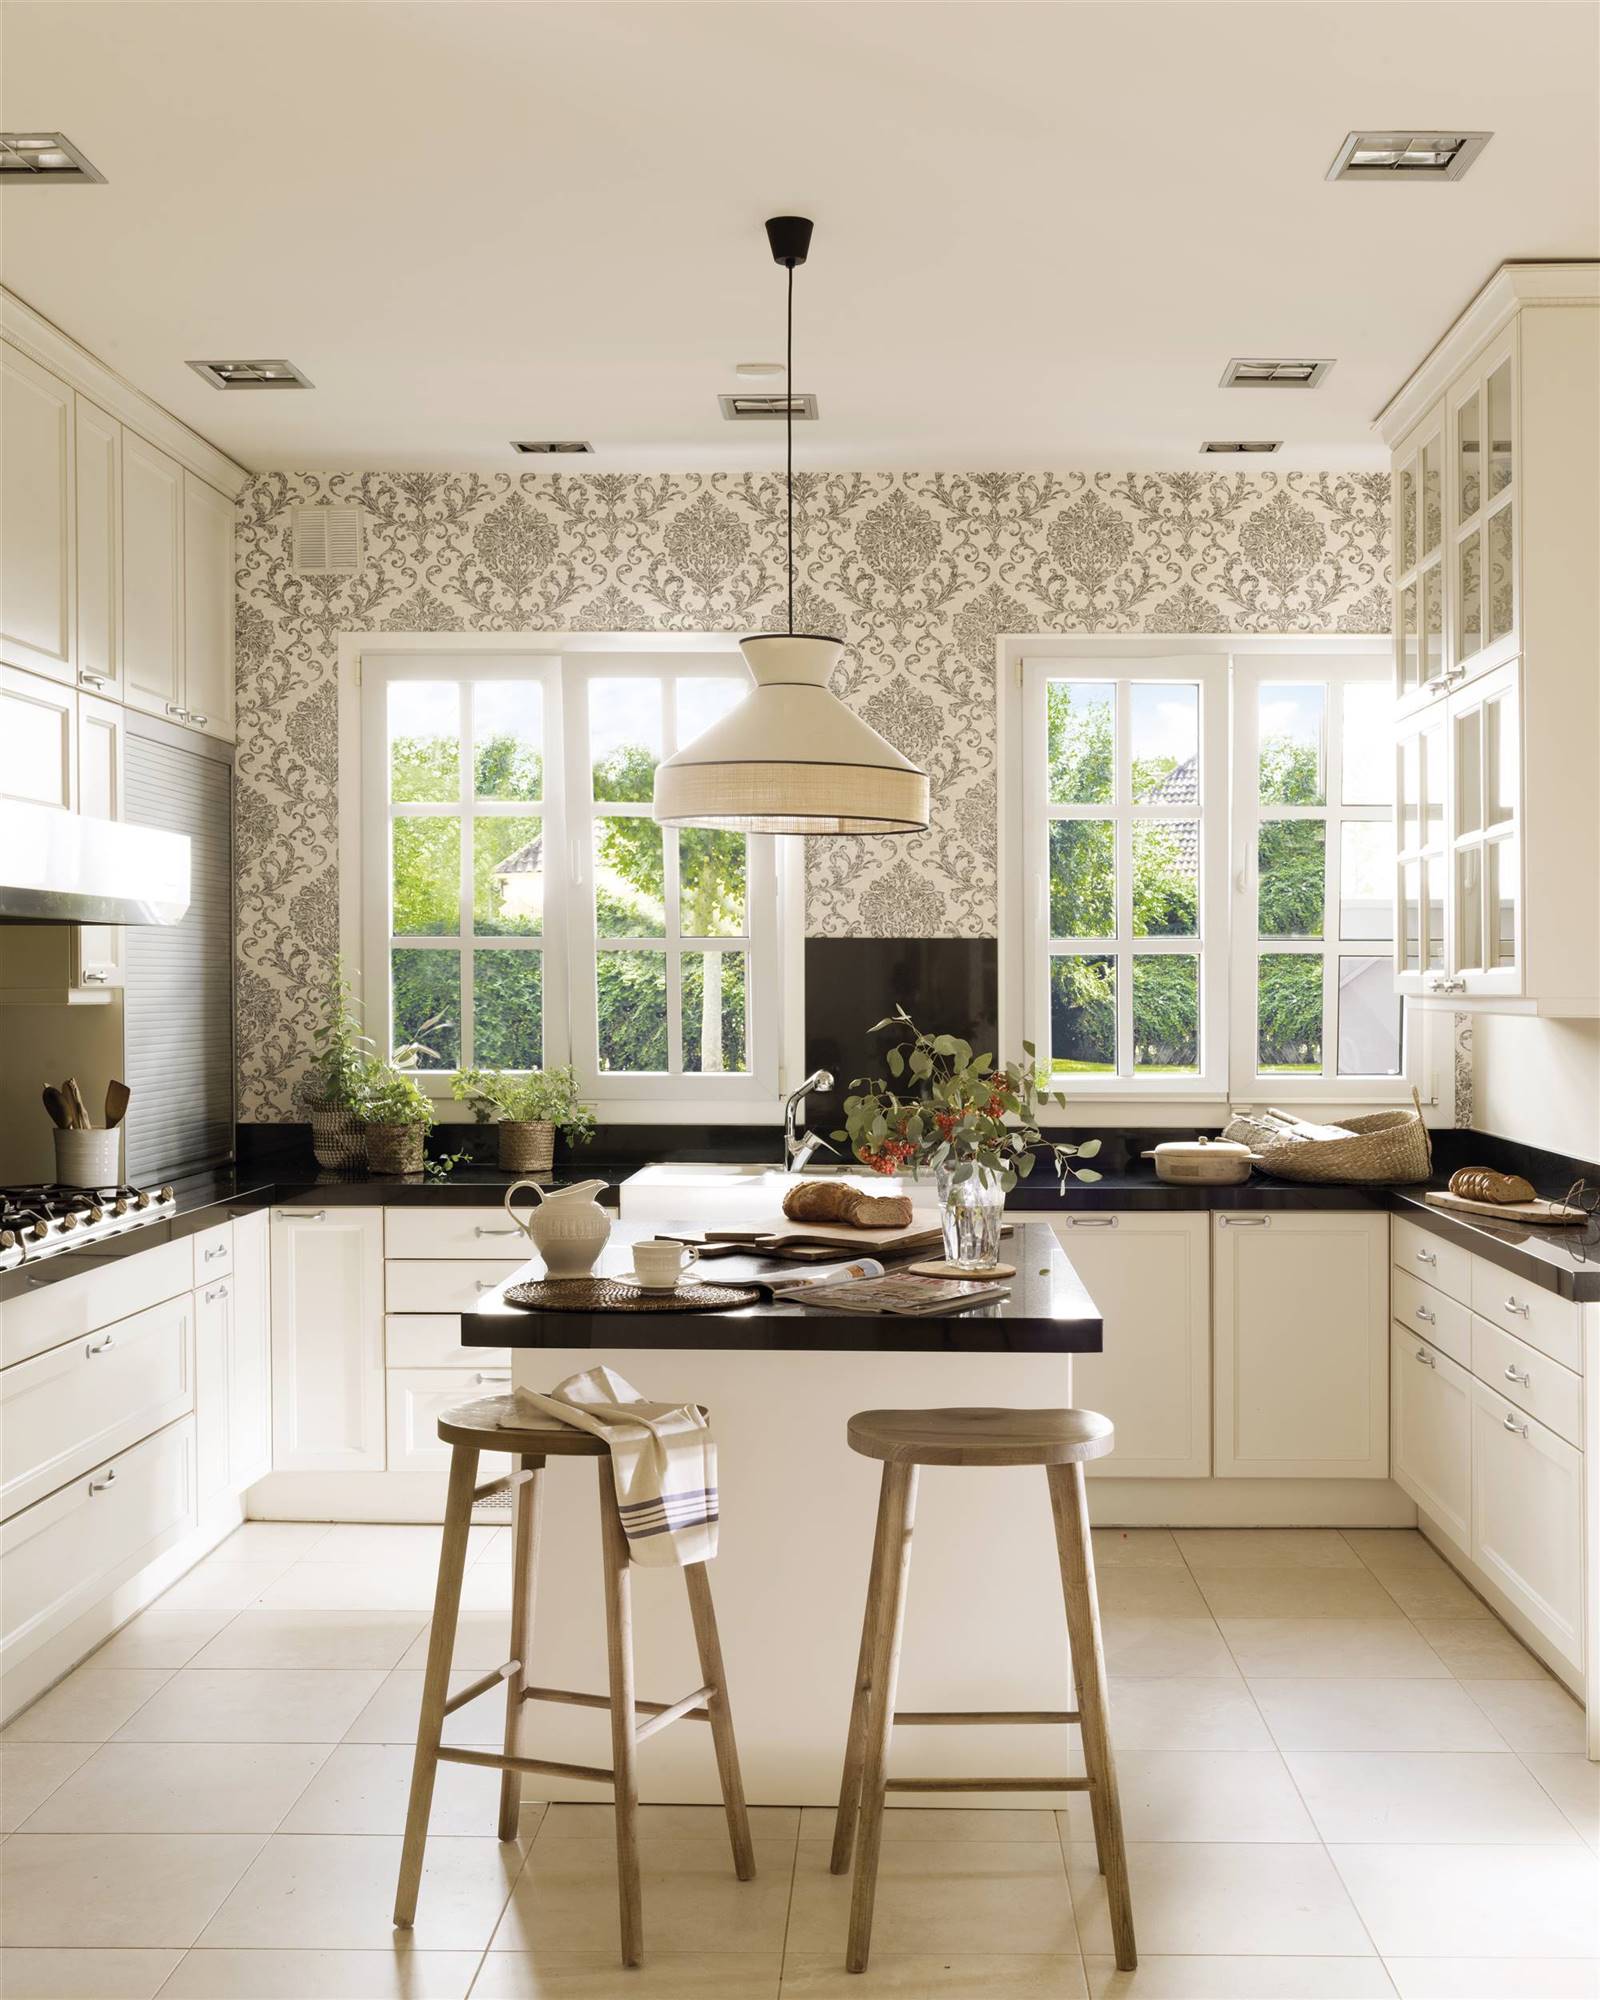 Cocina blanca y negra de estilo clasico con isla y taburetes. Encimera gris antracita y papel pintado en una de las paredes.